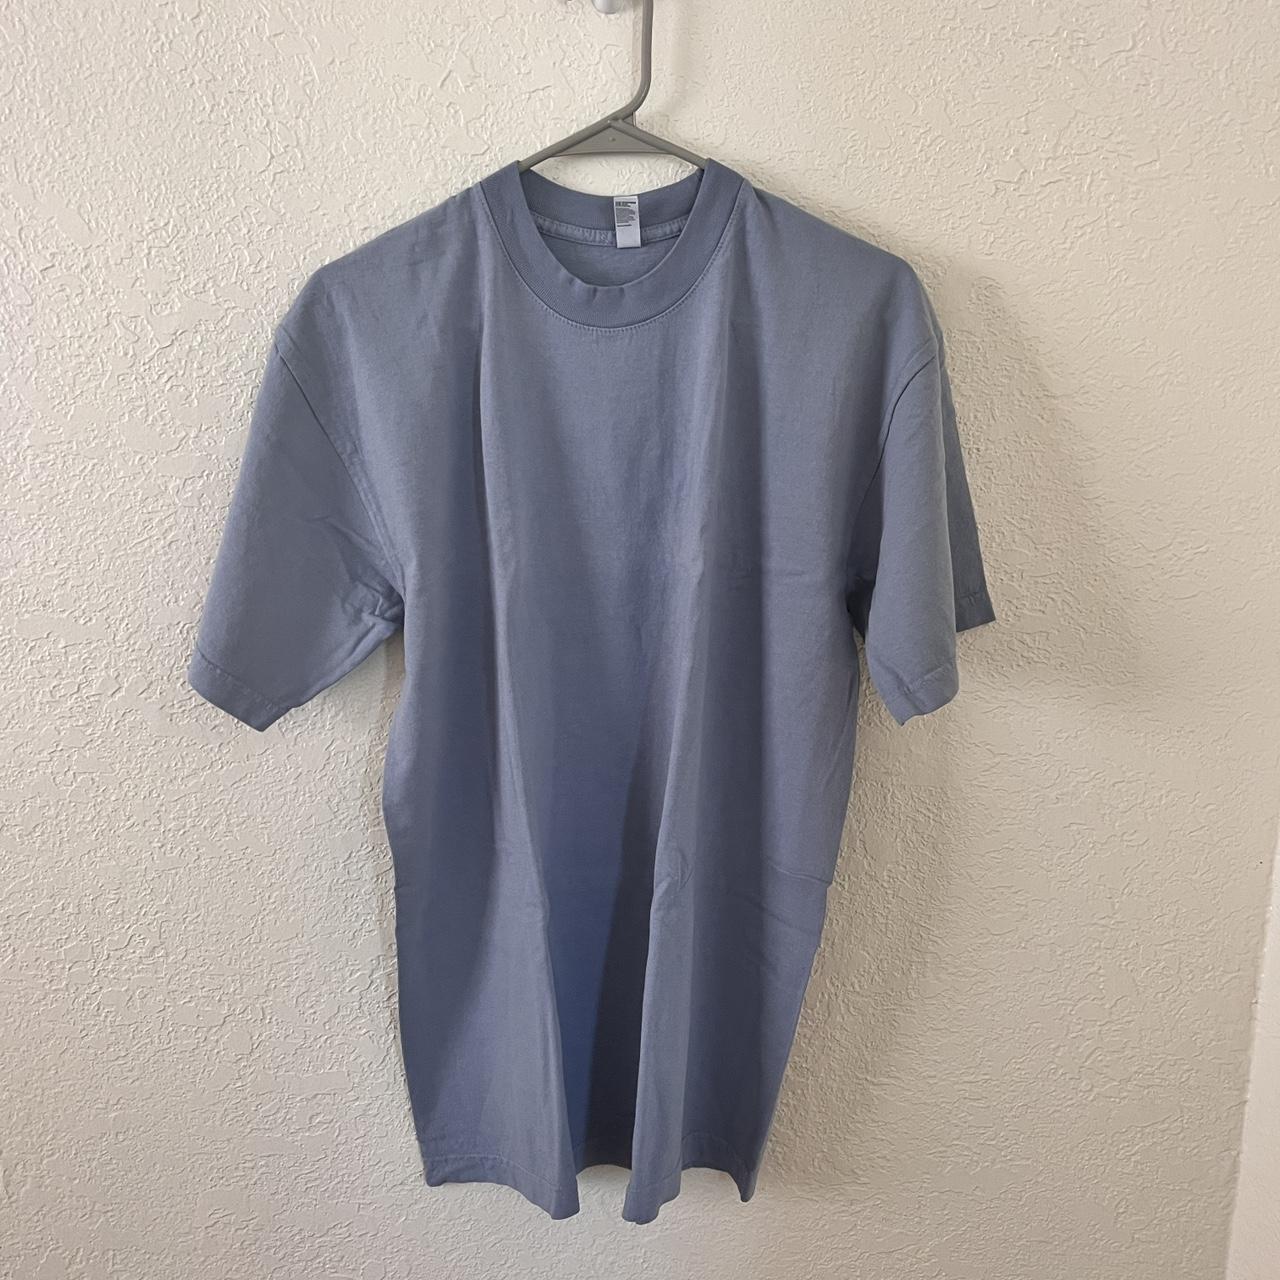 LA Apparel light blue XL shirt Never worn, brand new - Depop